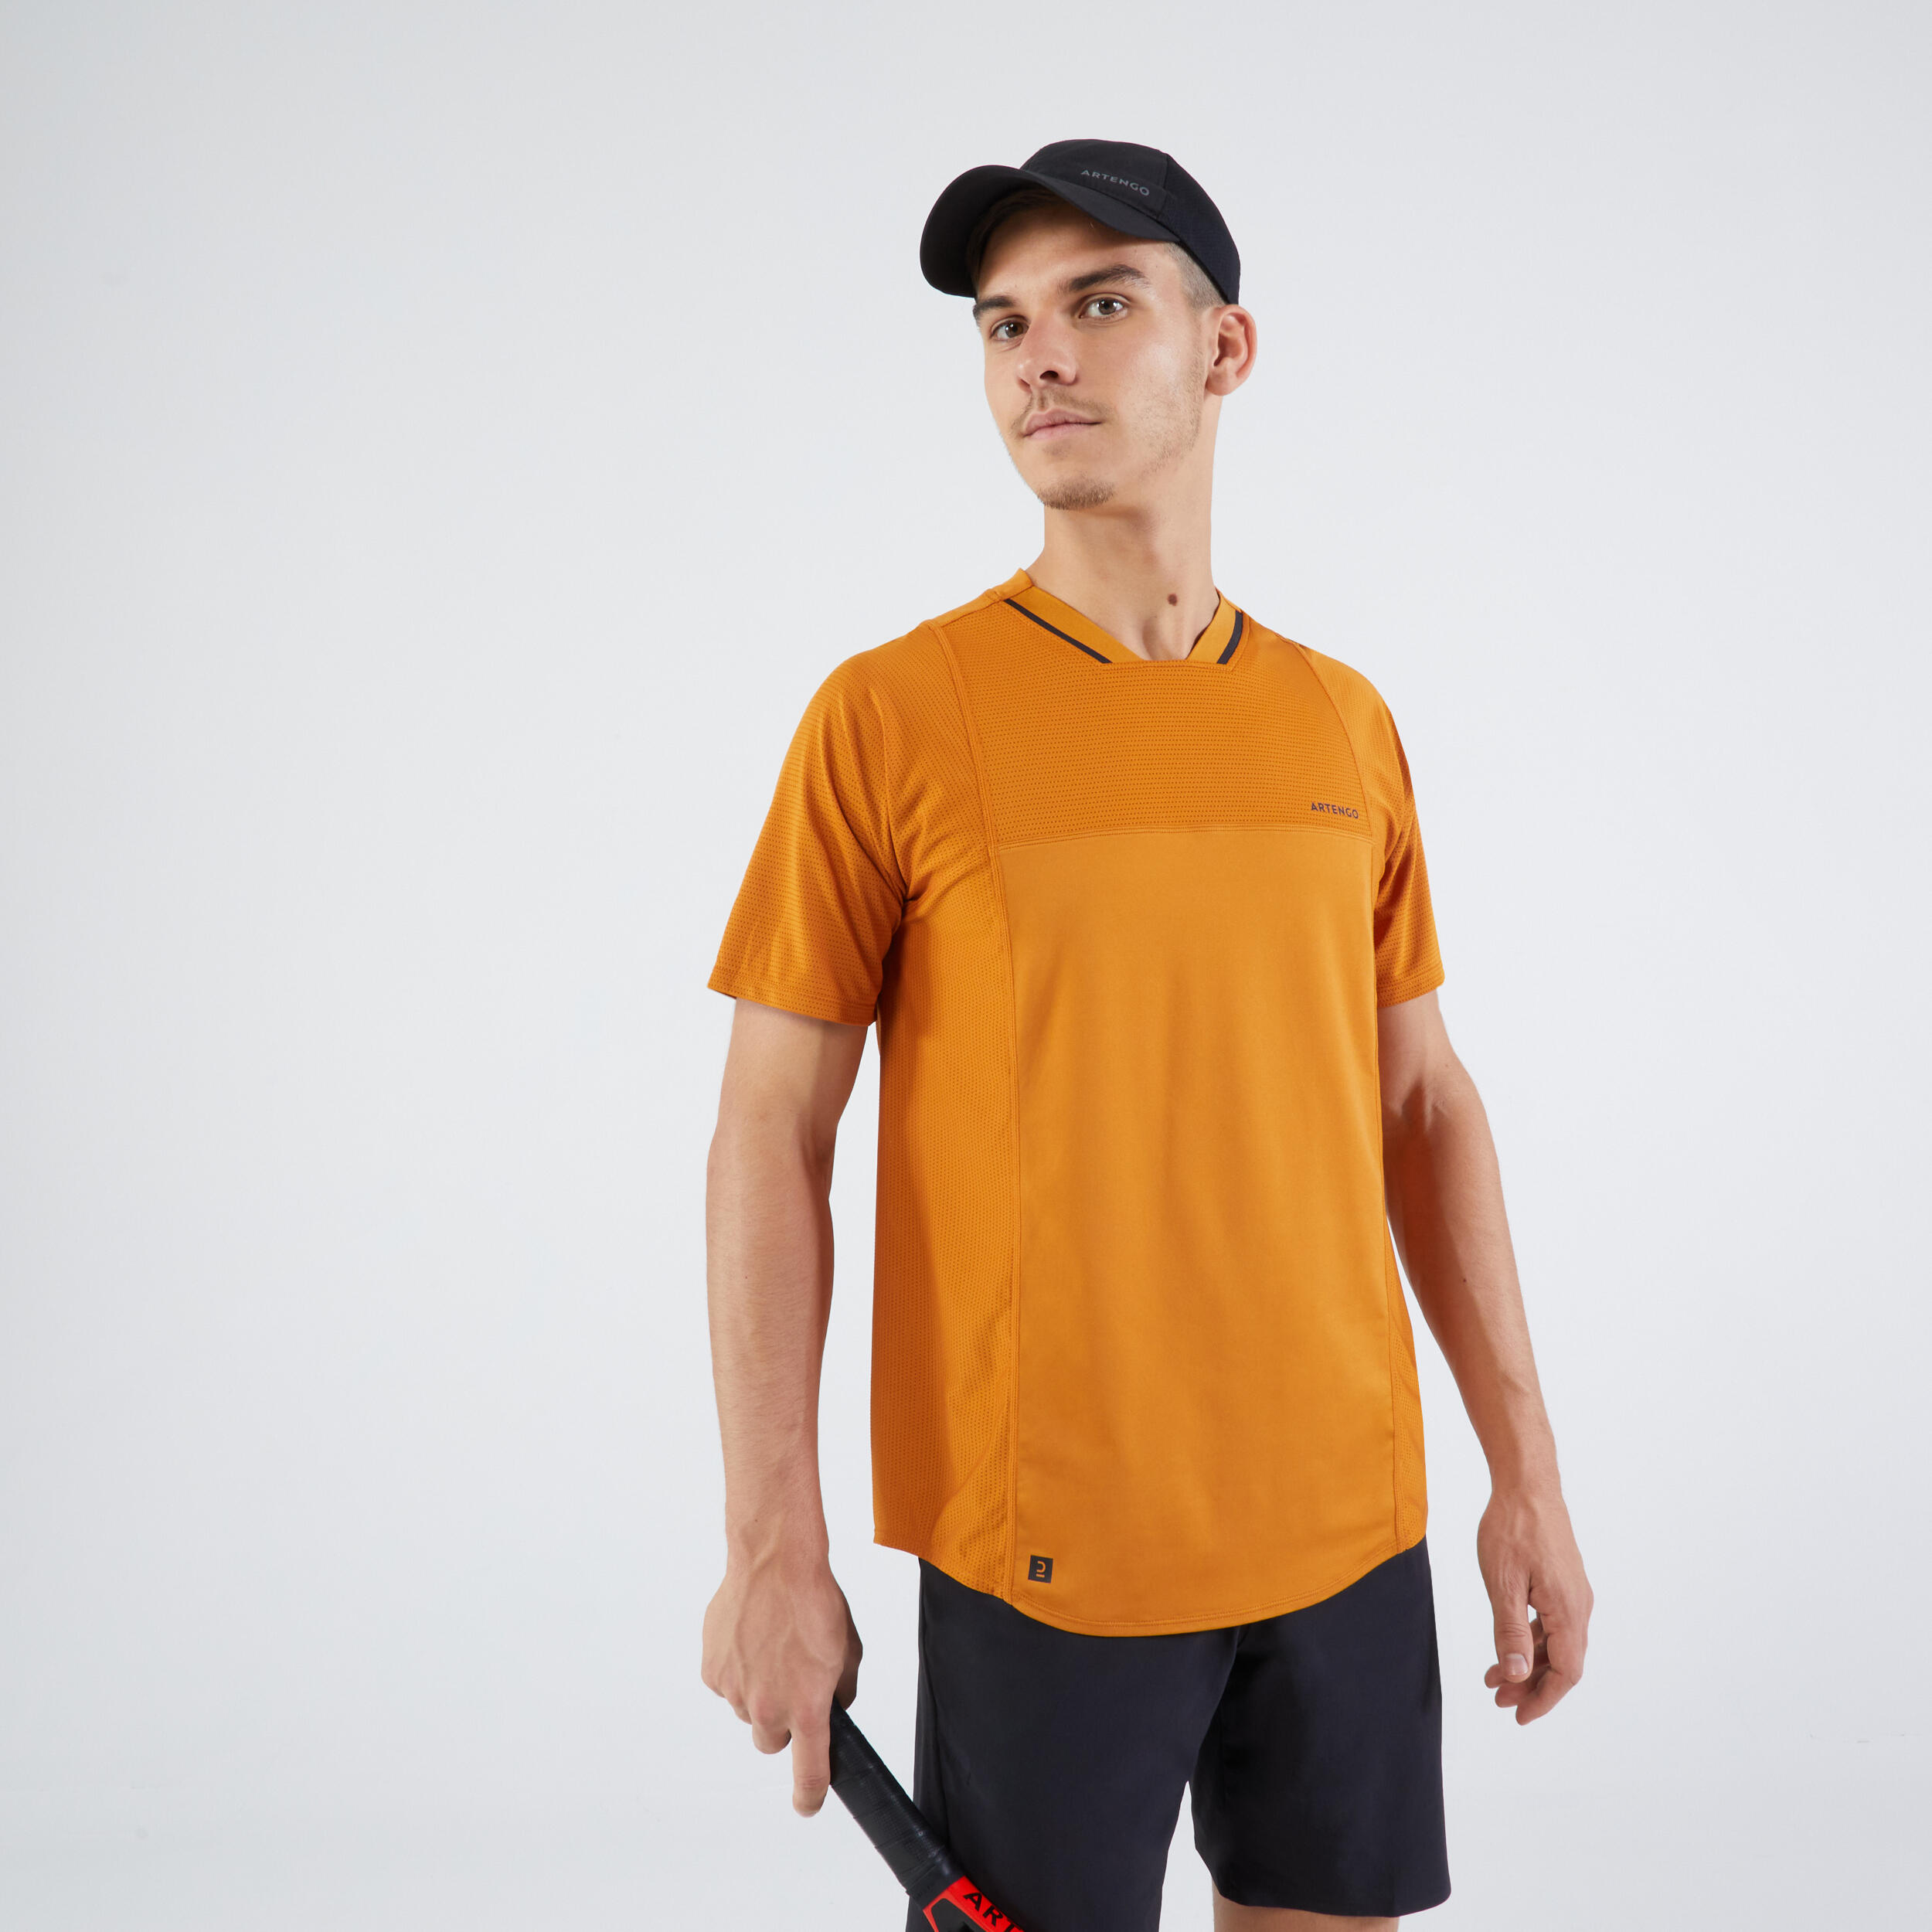 ARTENGO Men's Short-Sleeved Tennis T-Shirt DRY VN - Ochre/Black